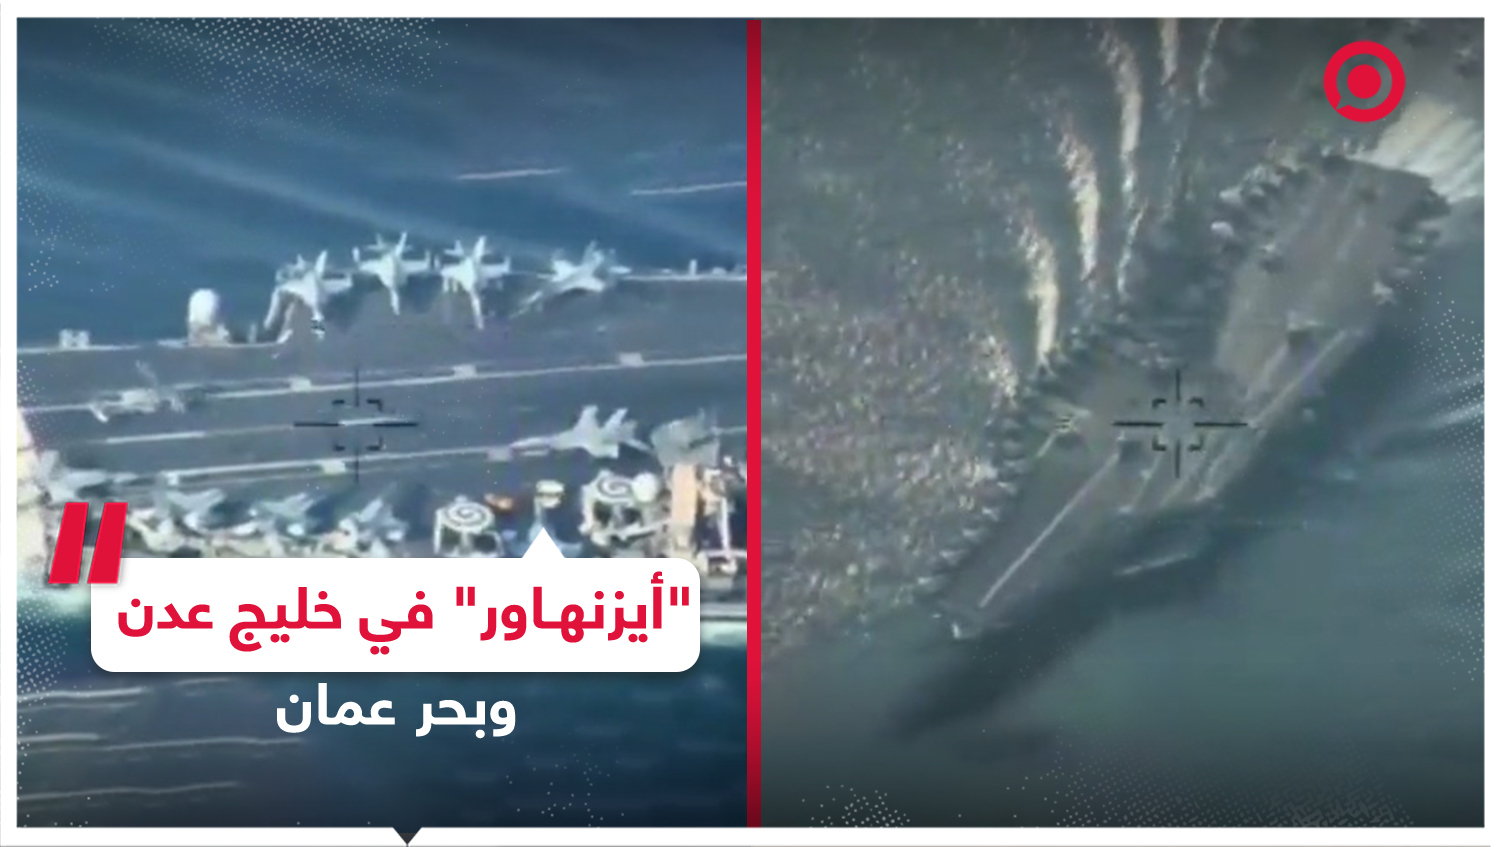 المسيرات الإيرانية ترصد حاملة الطائرات الأمريكية "أيزنهاور" في خليج عدن وبحر عمان